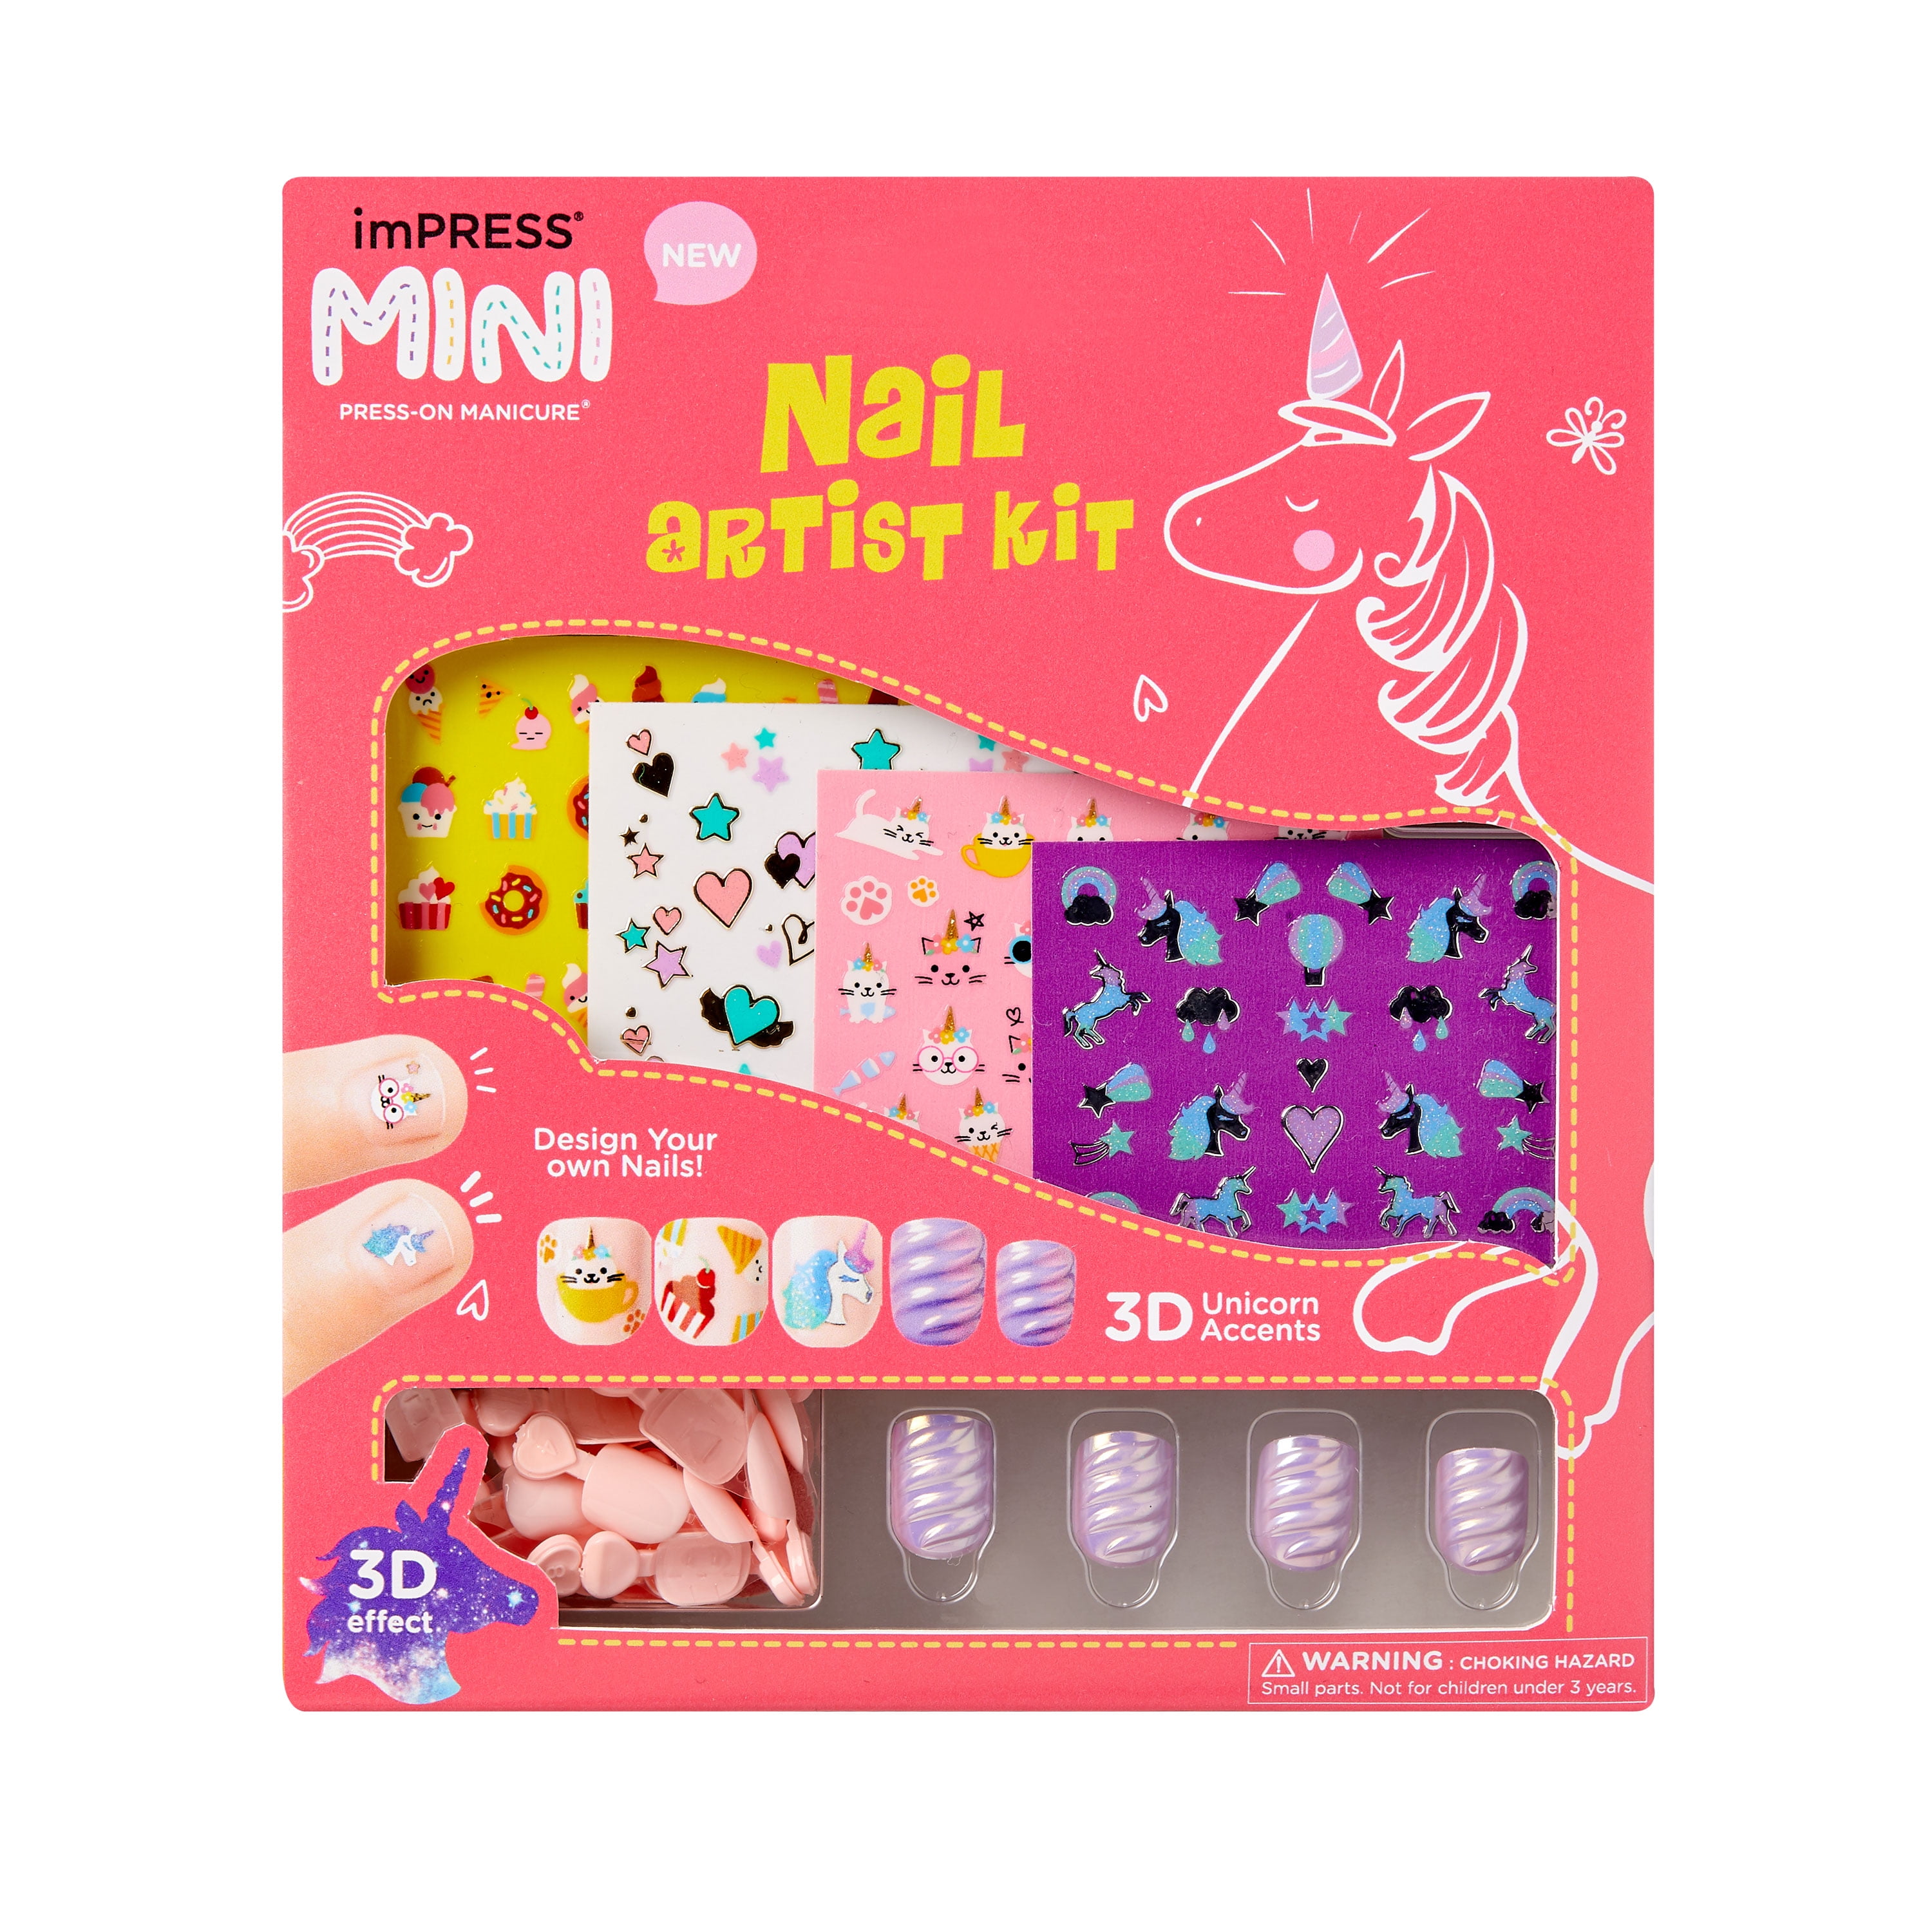 Girls Ulitmate Nail Polish Set and Nail Art Kits! Girl's Love This! Nail  and Pedicure Combo Sets : Amazon.in: Beauty